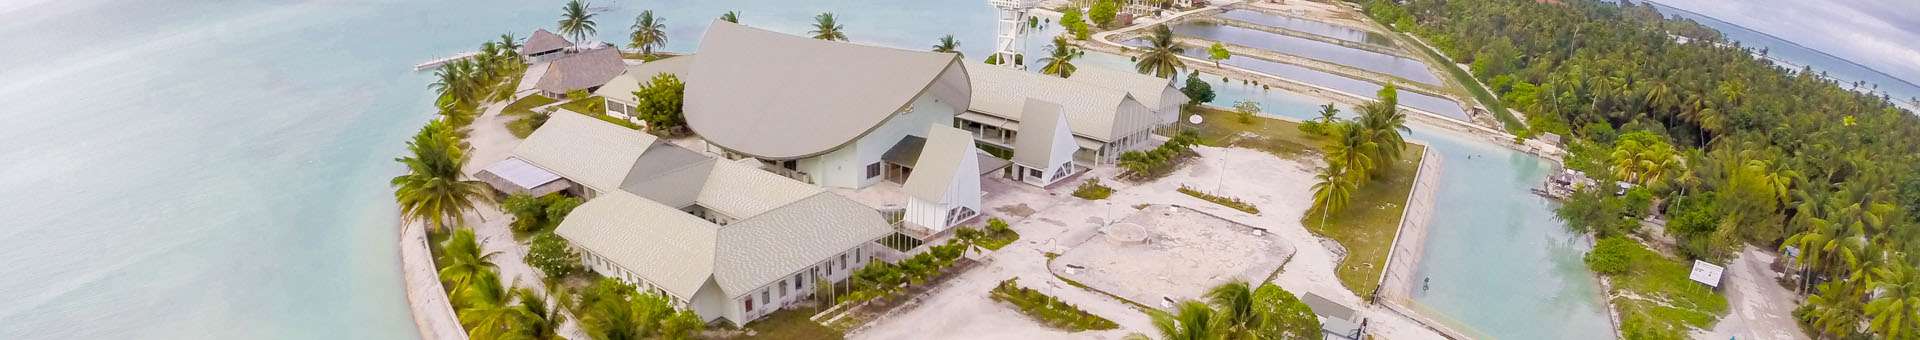 Rechercher des informations WHOIS sur les noms de domaine aux Kiribati